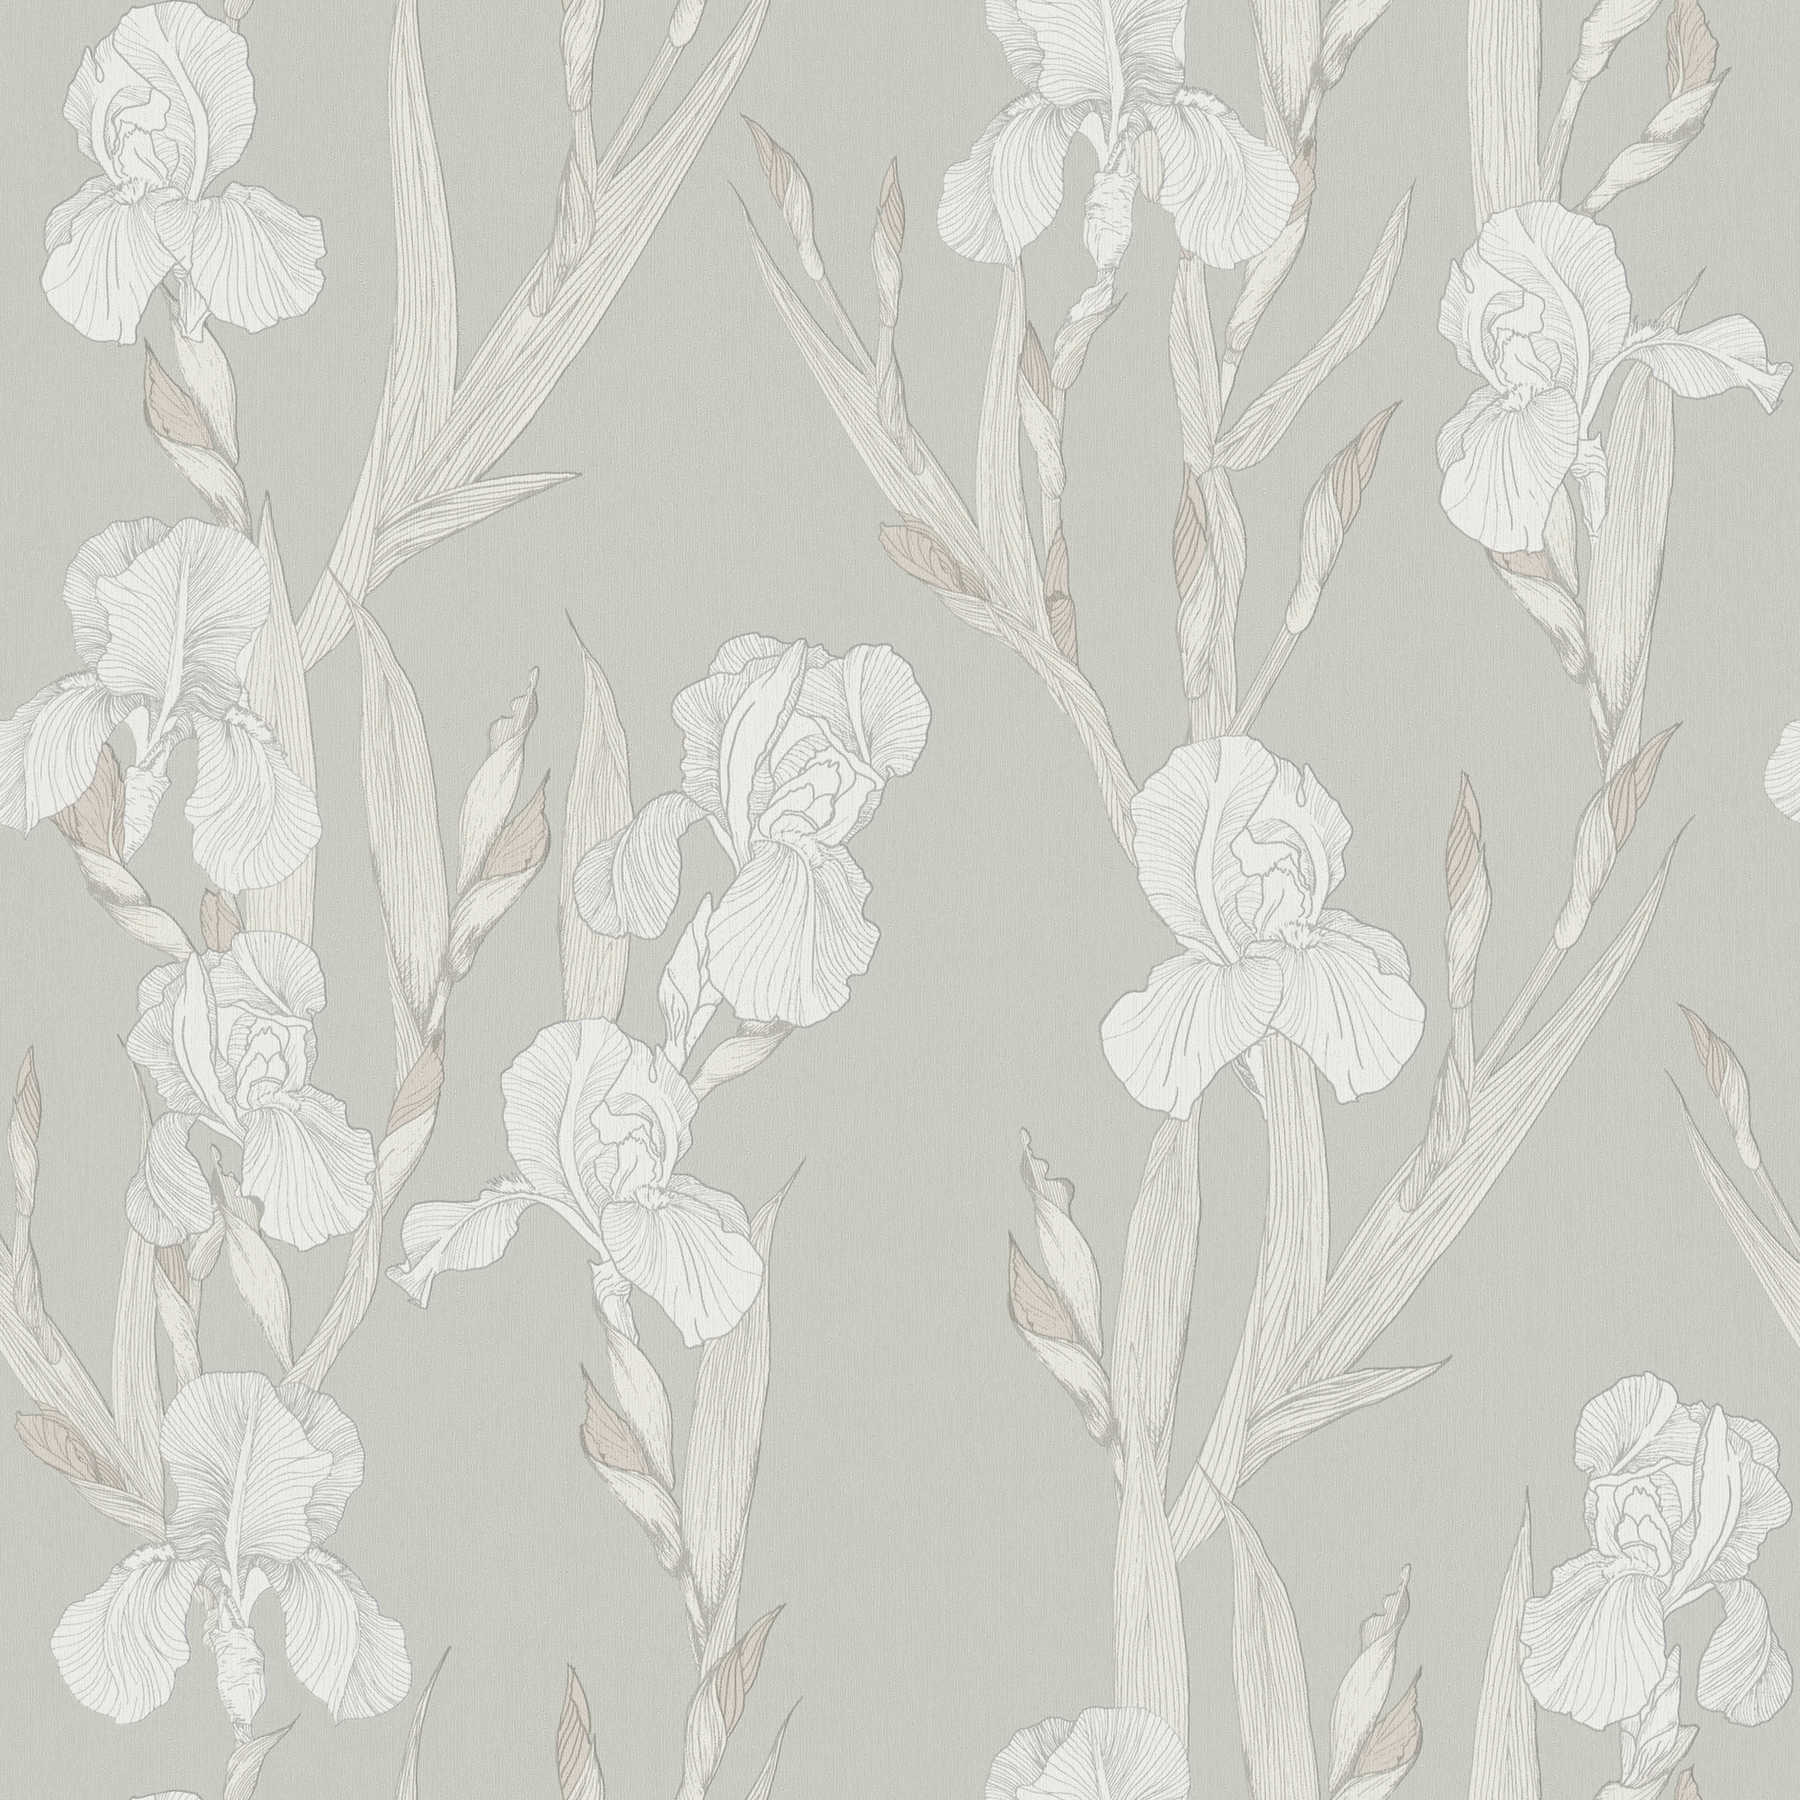 Floral wallpaper stylized, flower tendrils & modern design - grey, white
